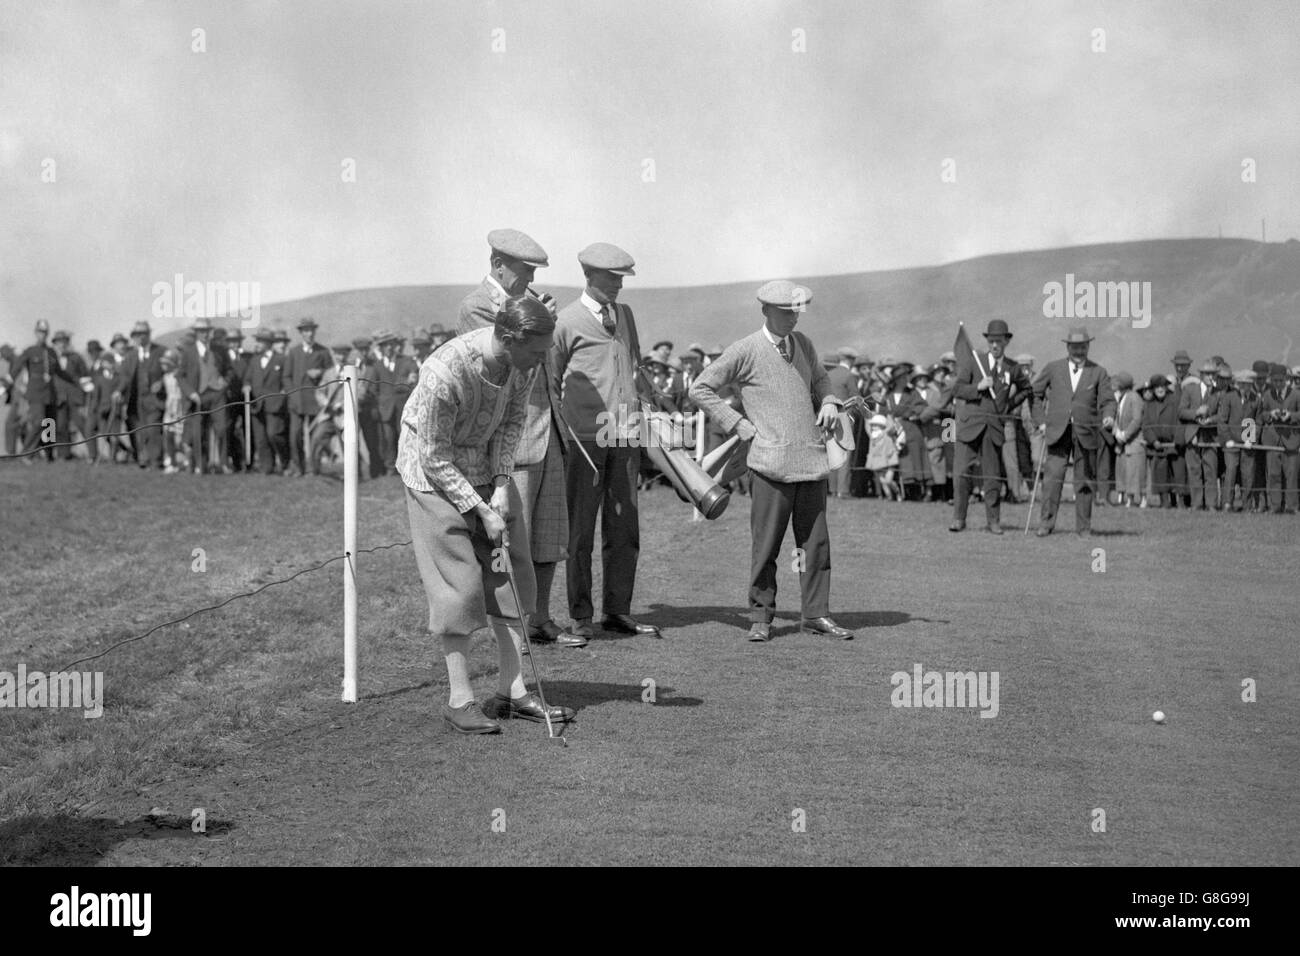 The Duke of York - Torneo di golf a Ton Pentre, Galles del Sud. La partita di golf del Duca di York con Frank Hodges MP al Ton Pentre nel Galles del Sud. Foto Stock